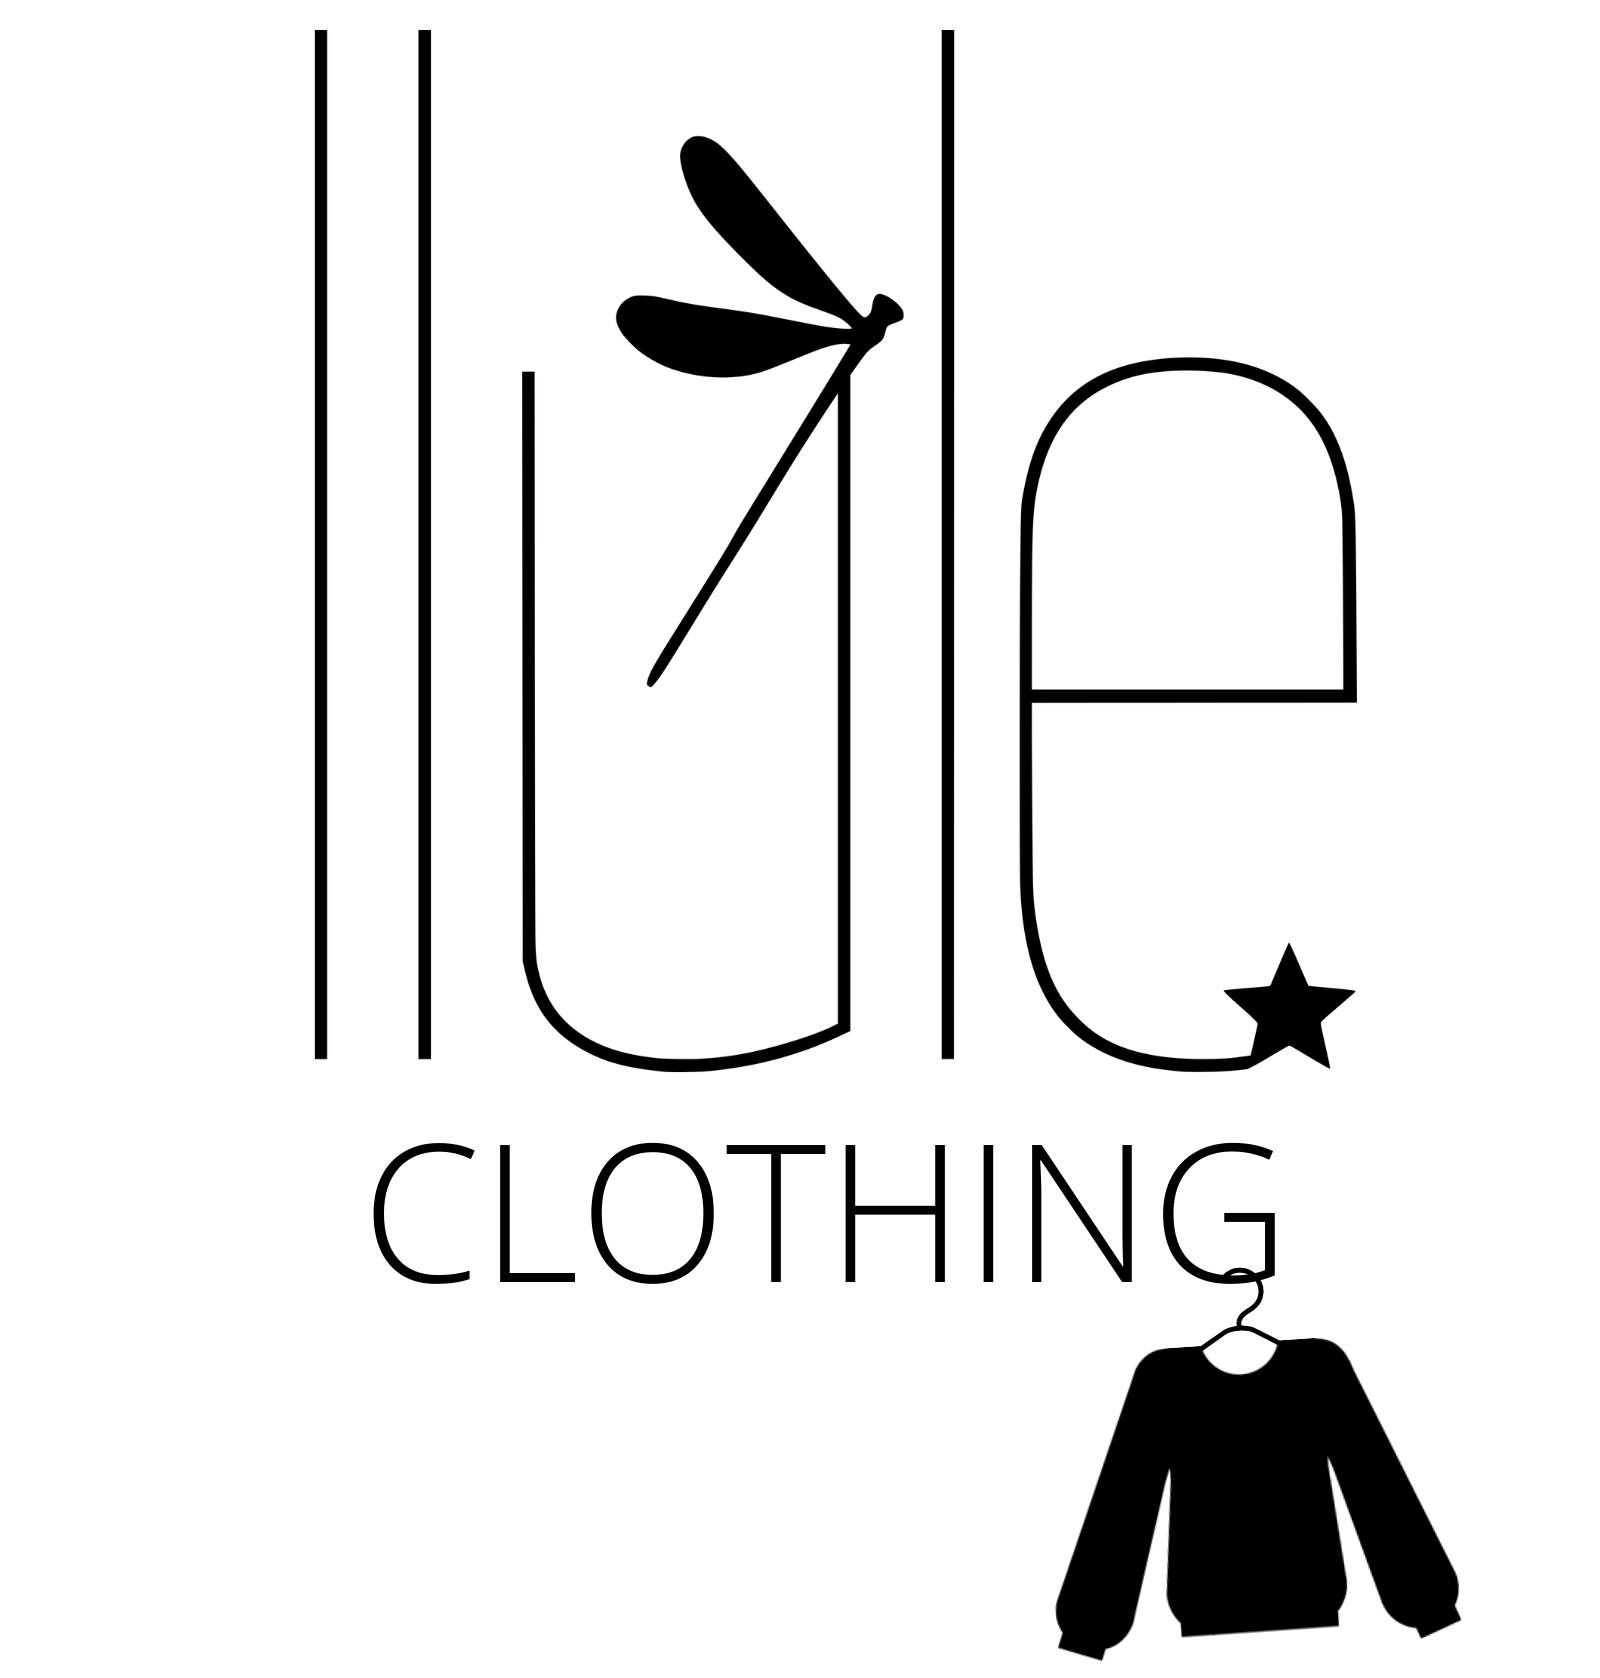 LLule clothing